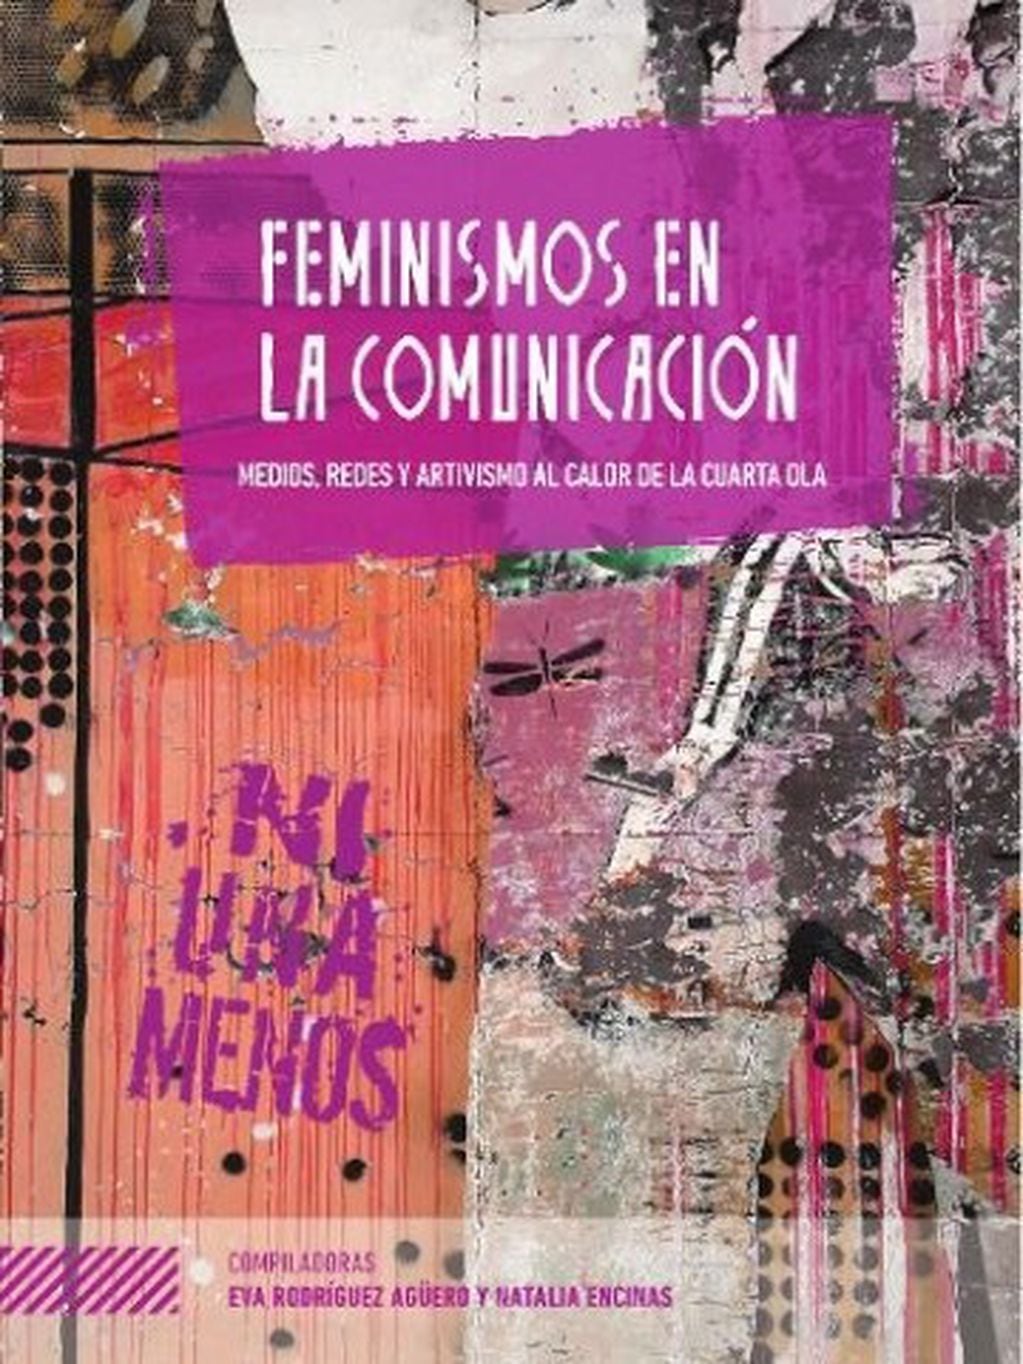 Libro: “Feminismos en la comunicación: medios, redes y artivismo al calor de la cuarta ola”